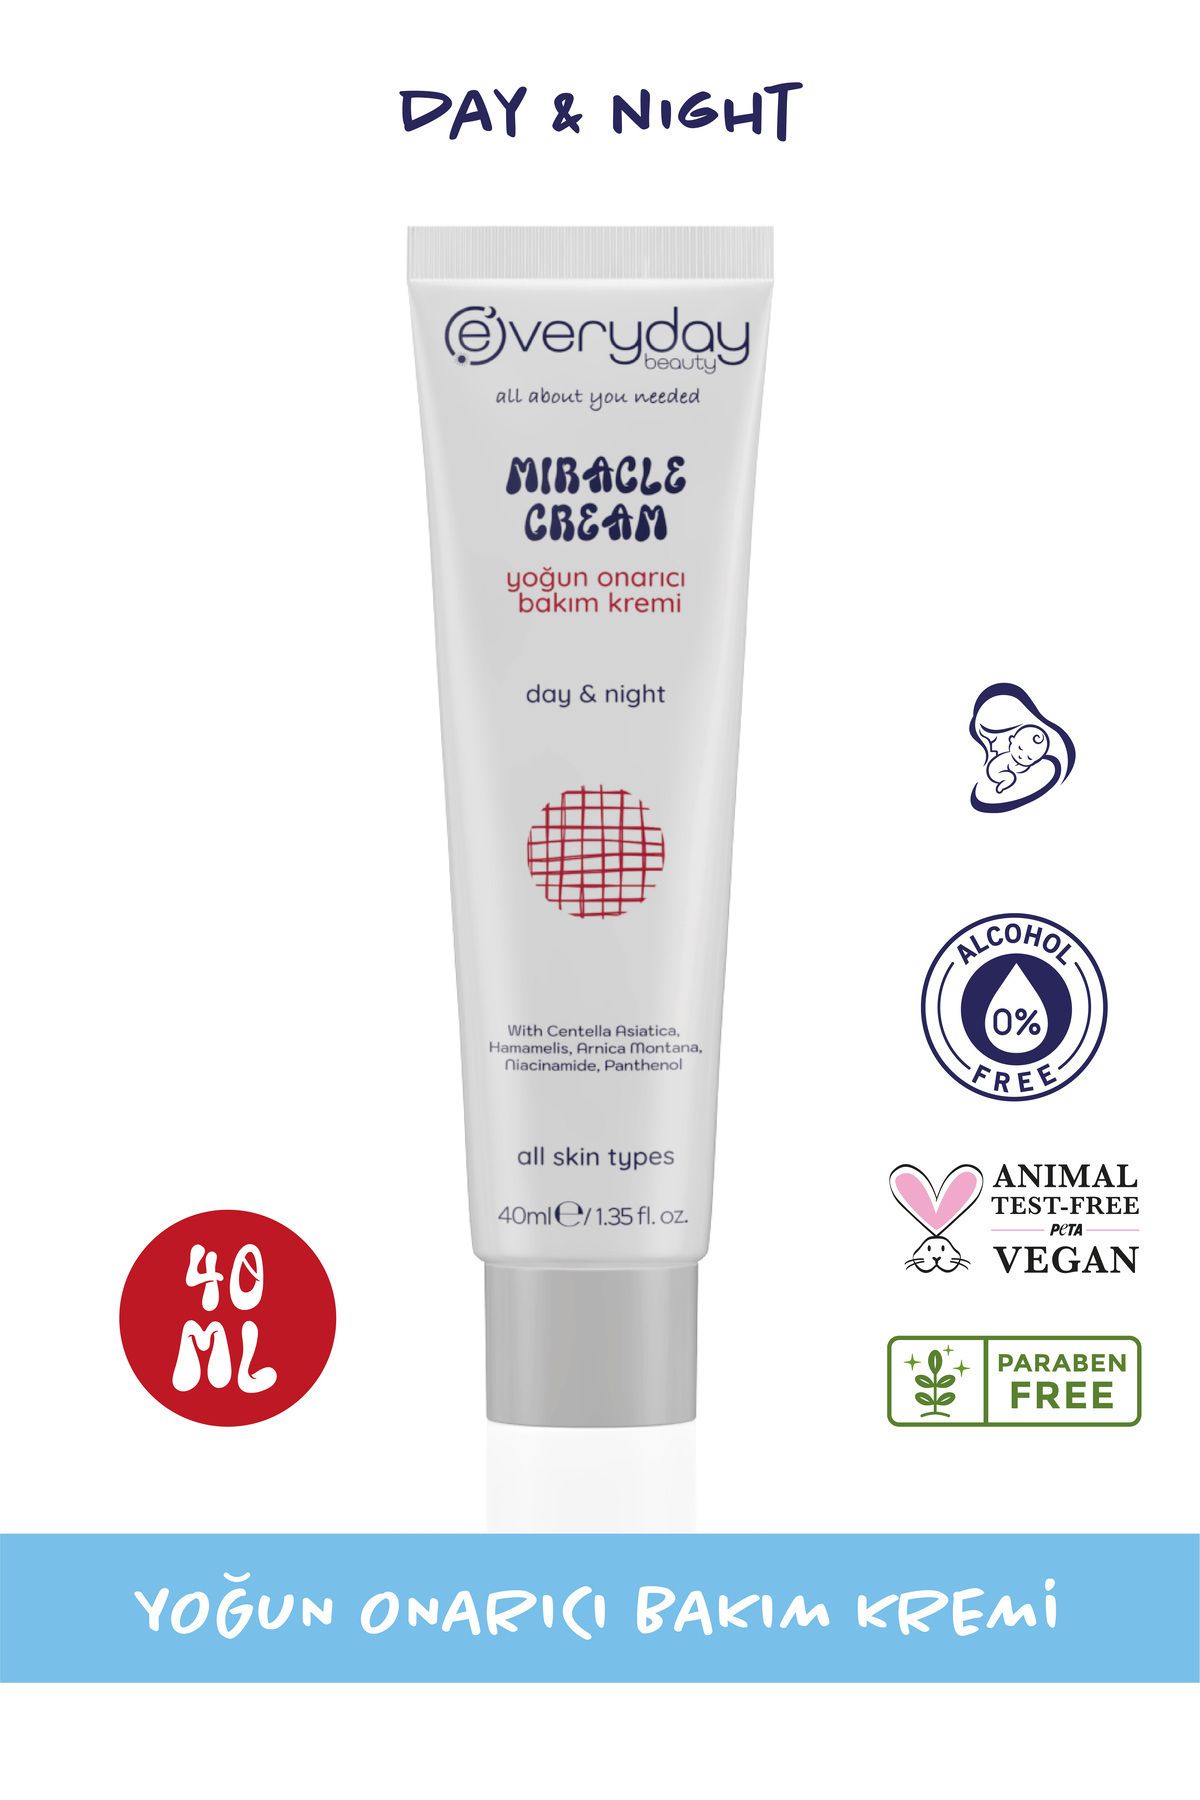 Everyday Beauty Miracle Cream Yoğun Onarıcı Mucizevi Bakım Kremi 40ml (centella, Hamamelis, Madecassol, Arnica)